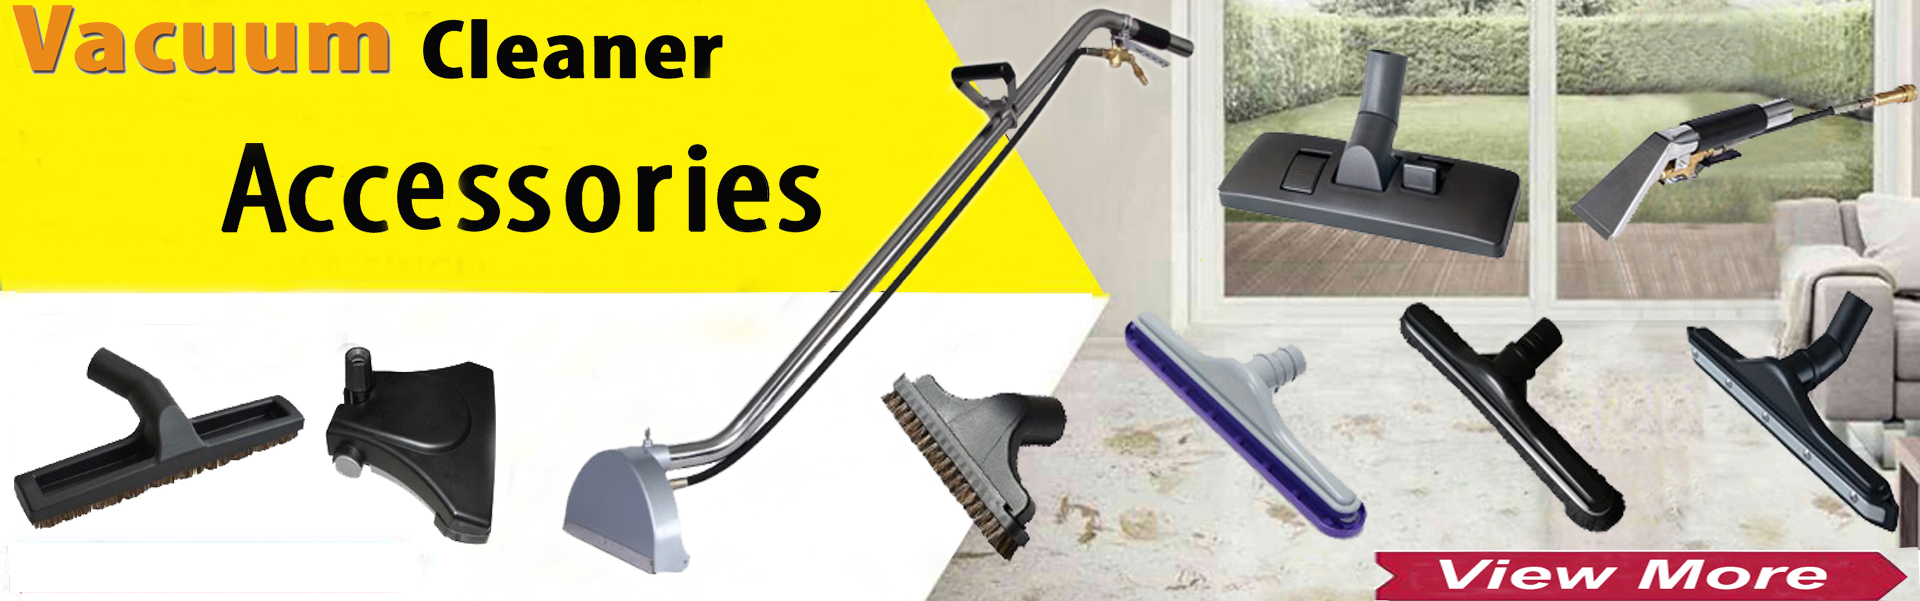 Vacuum Cleaner Accessories